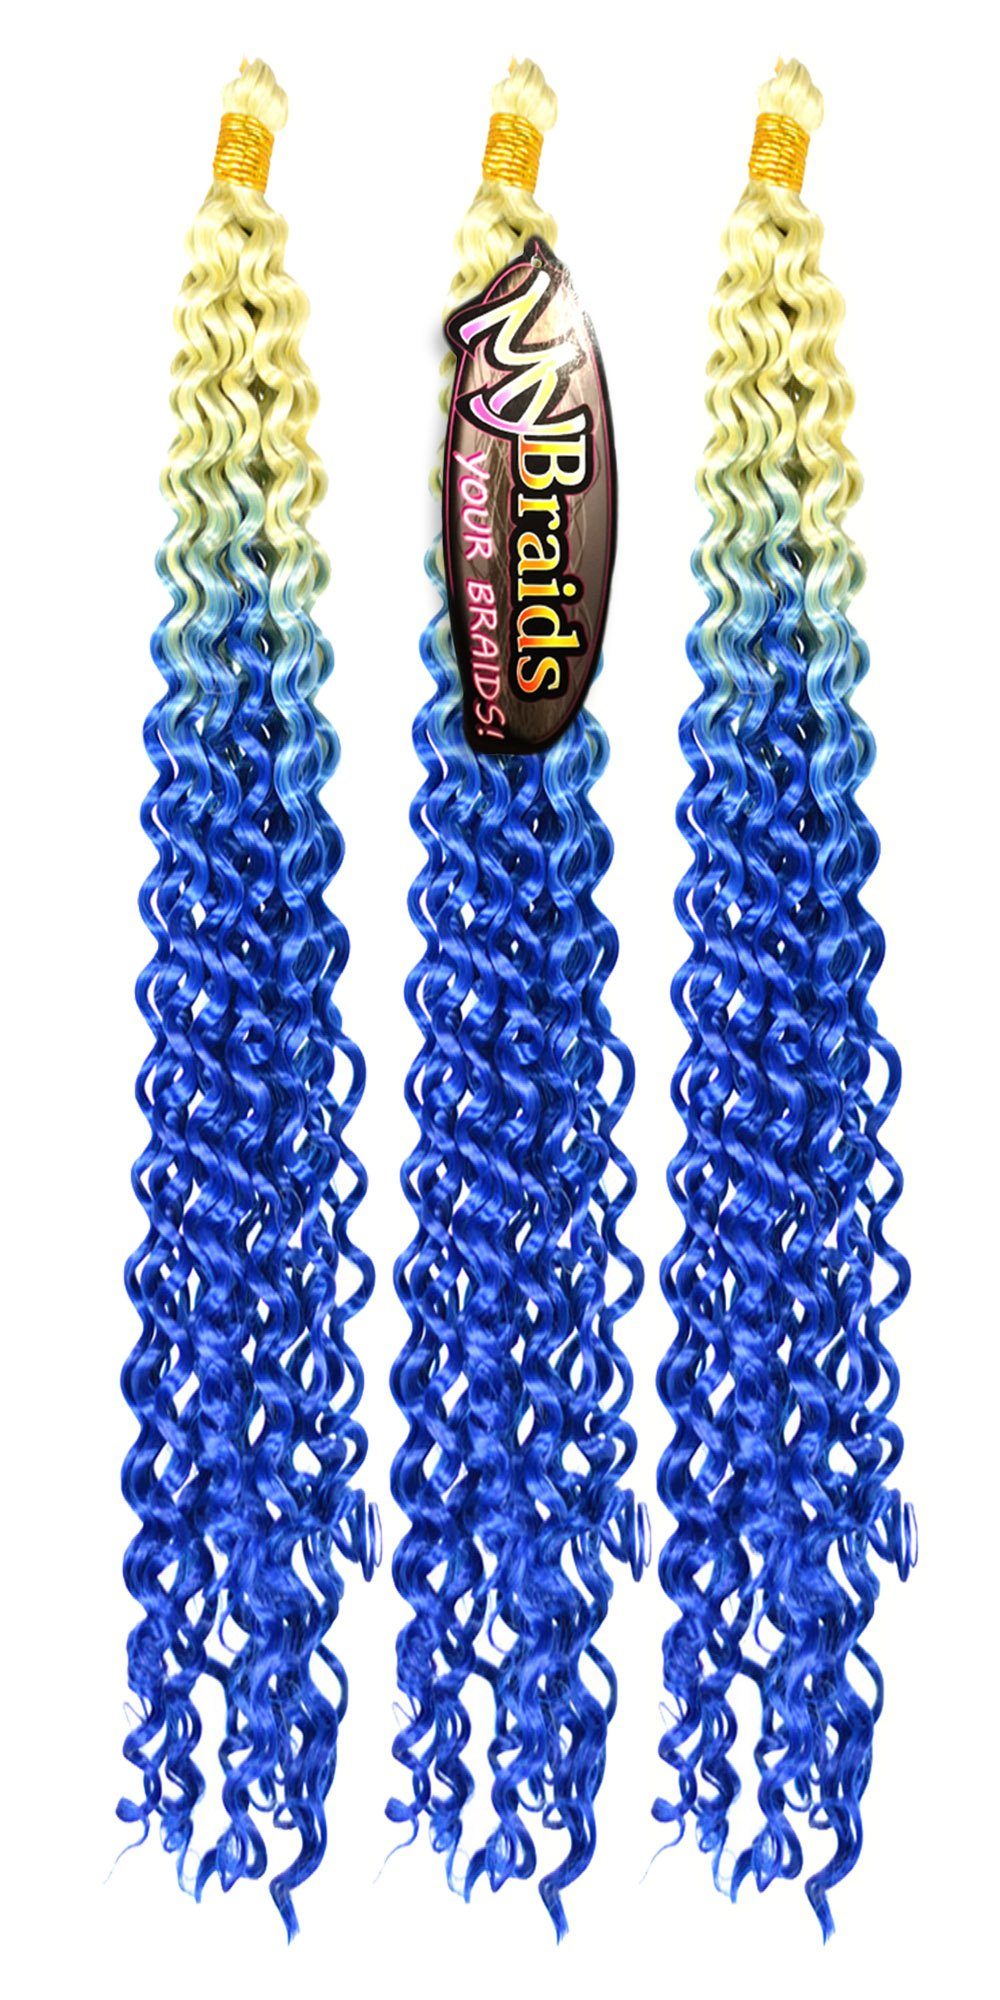 MyBraids YOUR BRAIDS! Kunsthaar-Extension Deep Wave Crochet Braids 3er Pack Flechthaar Ombre Zöpfe Wellig 19-WS Hellblond-Blau